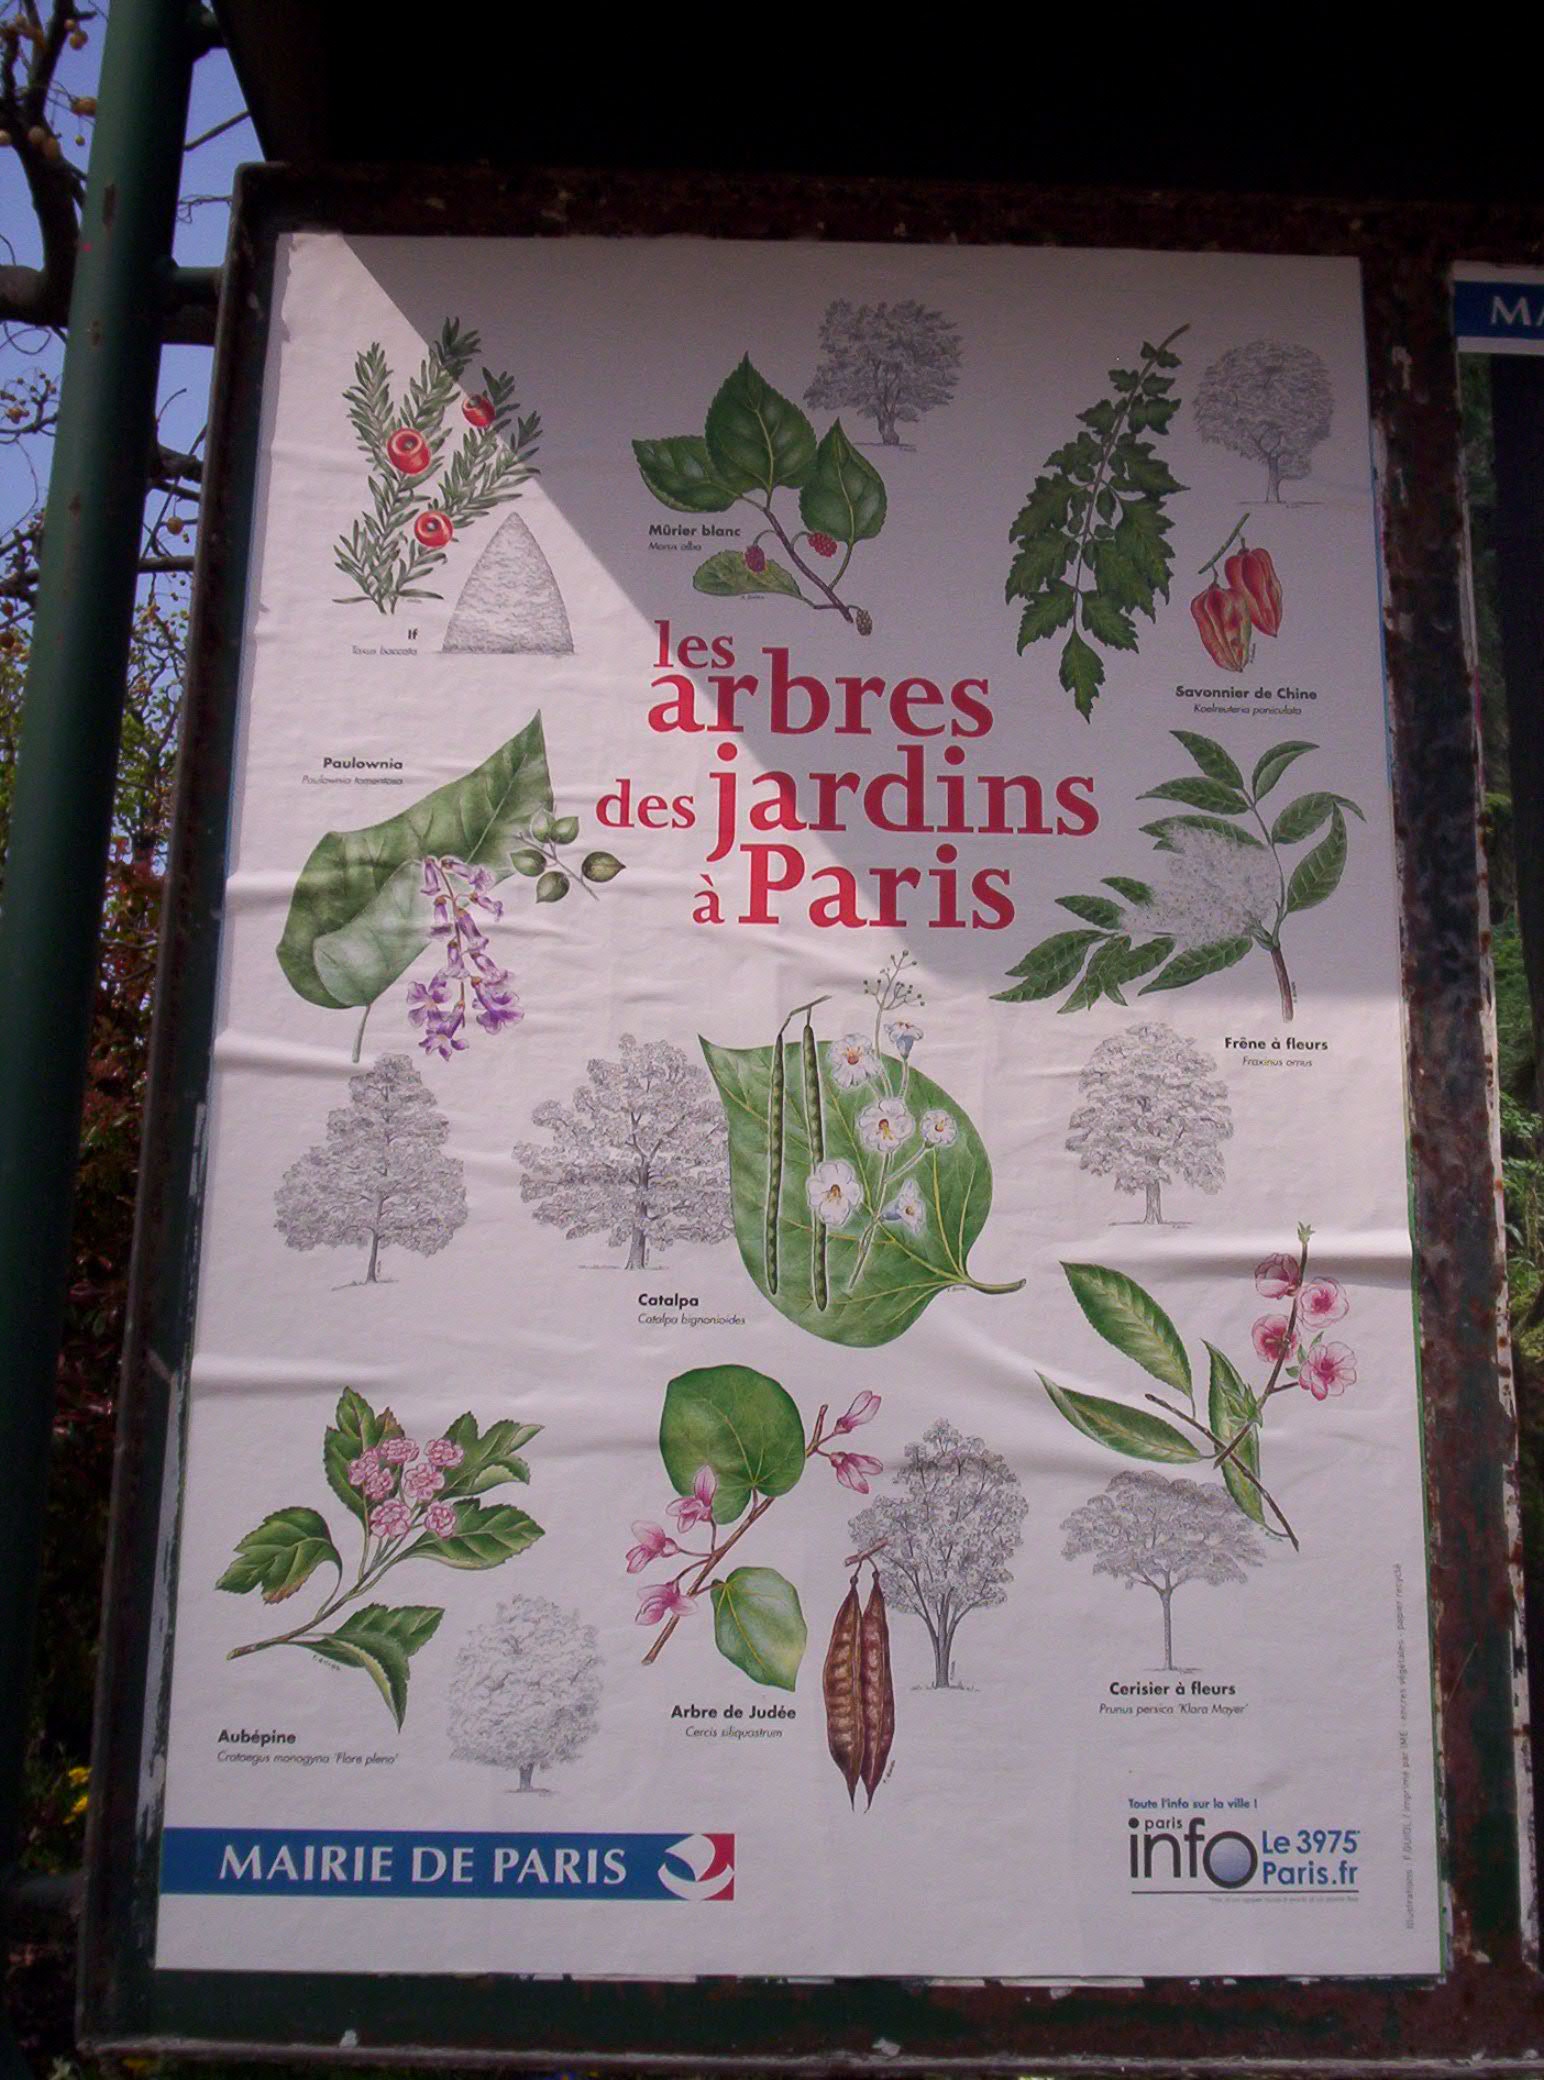 Stromy v zahradách v Paříži